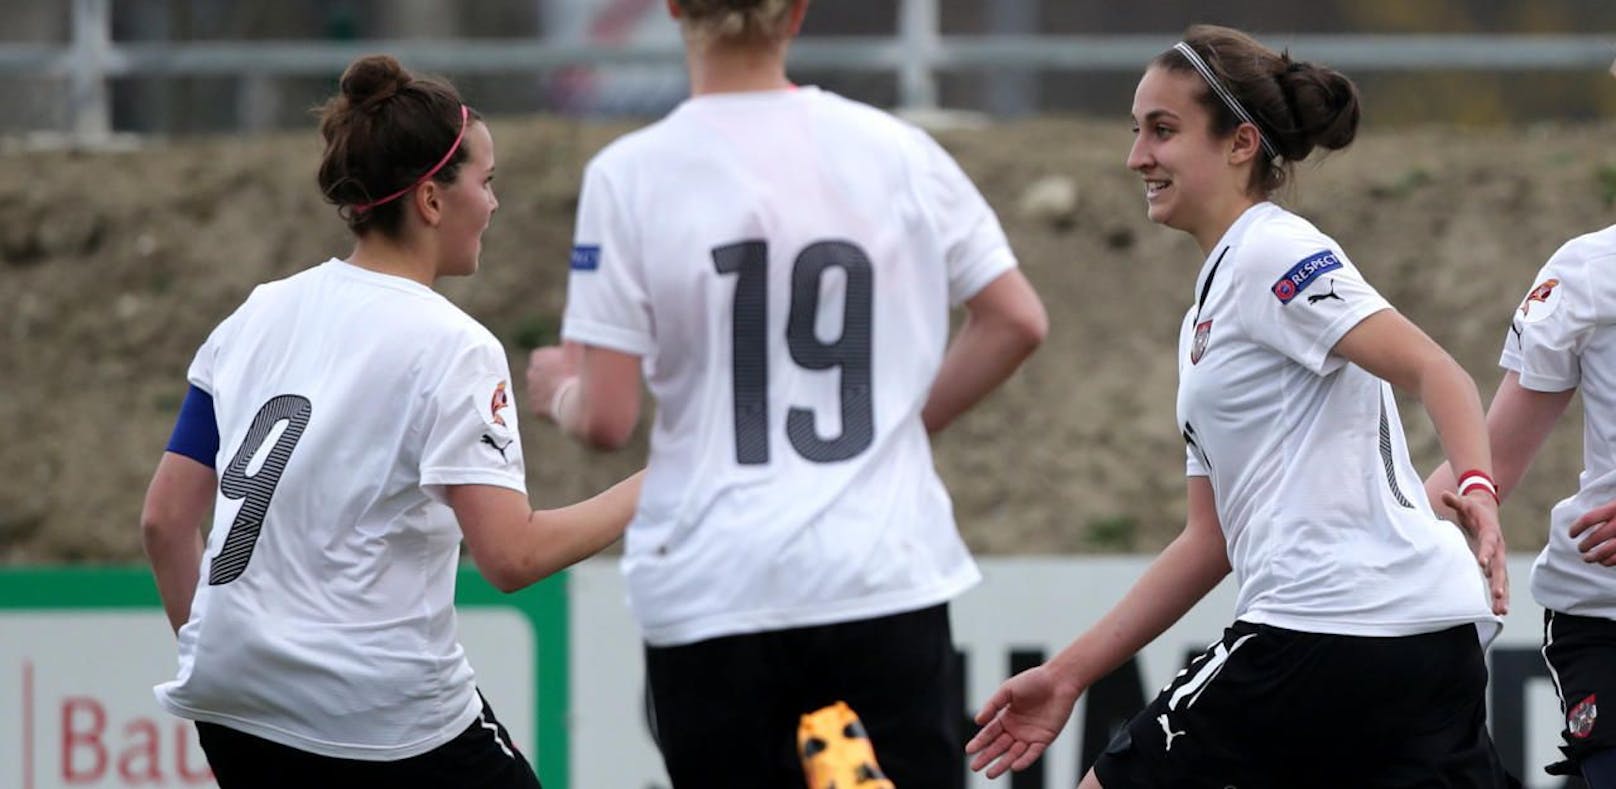 St. Pöltener Mädels gewinnen Fußball-WM